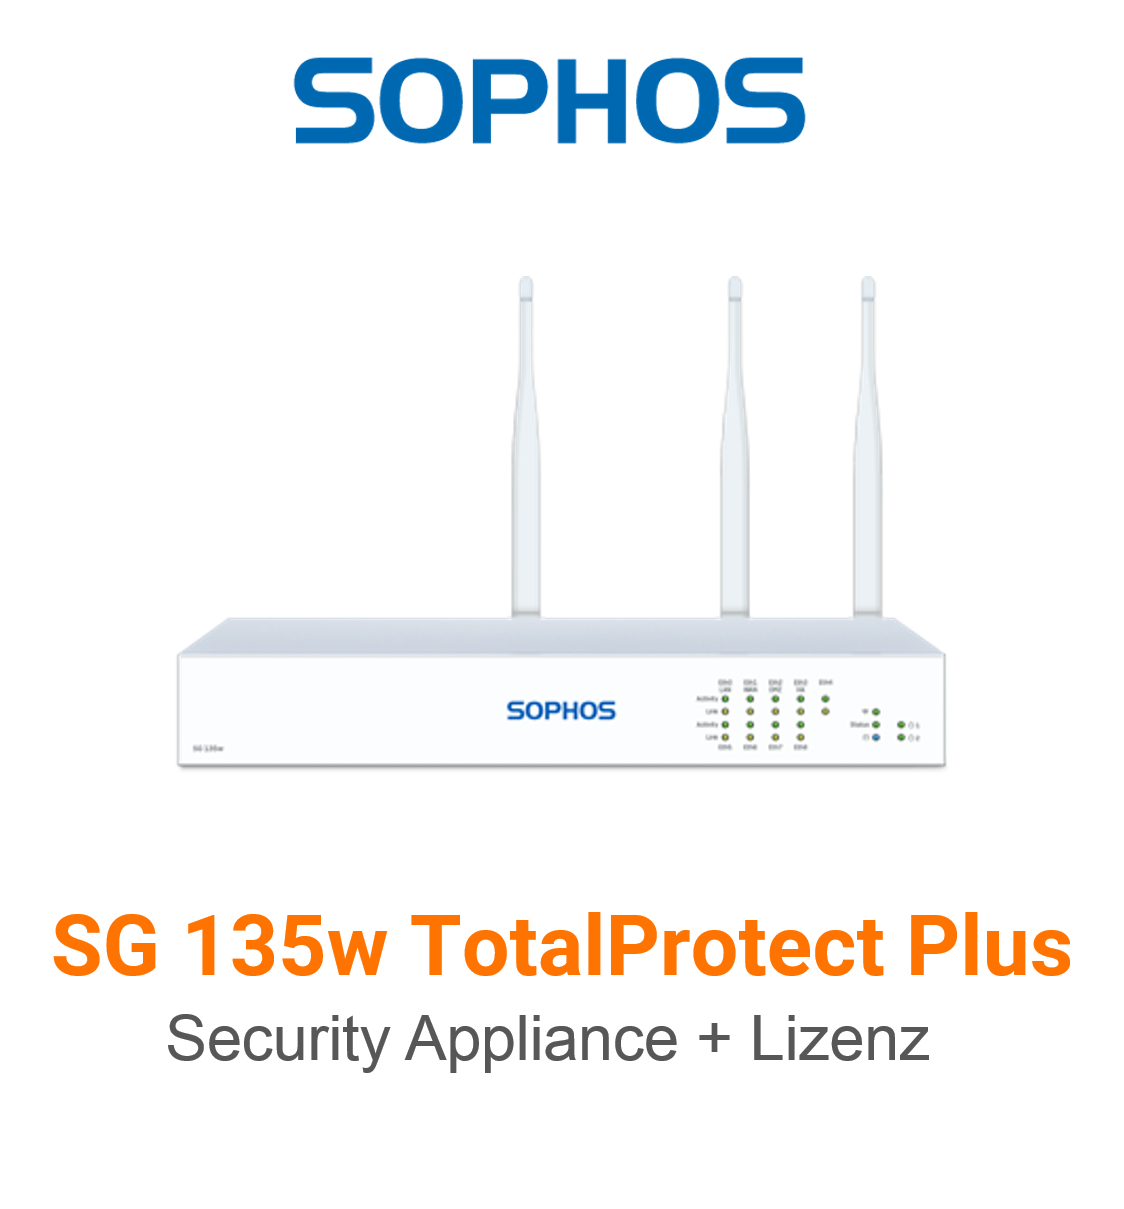 Sophos SG 135w TotalProtect Plus Bundle (Hardware + Lizenz)